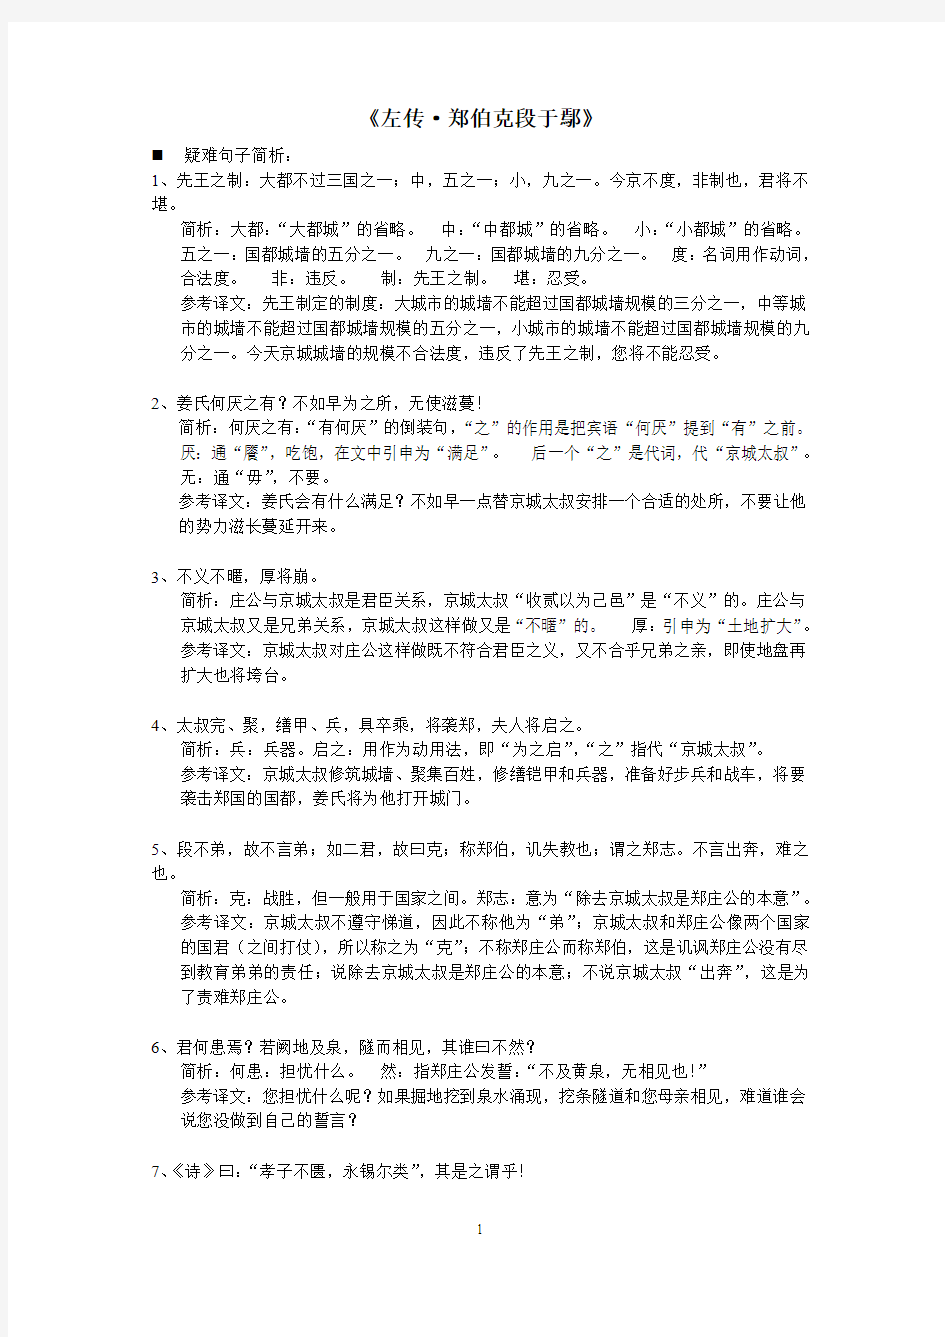 《汉语与写作1》精品课程网上辅导材料 (2)